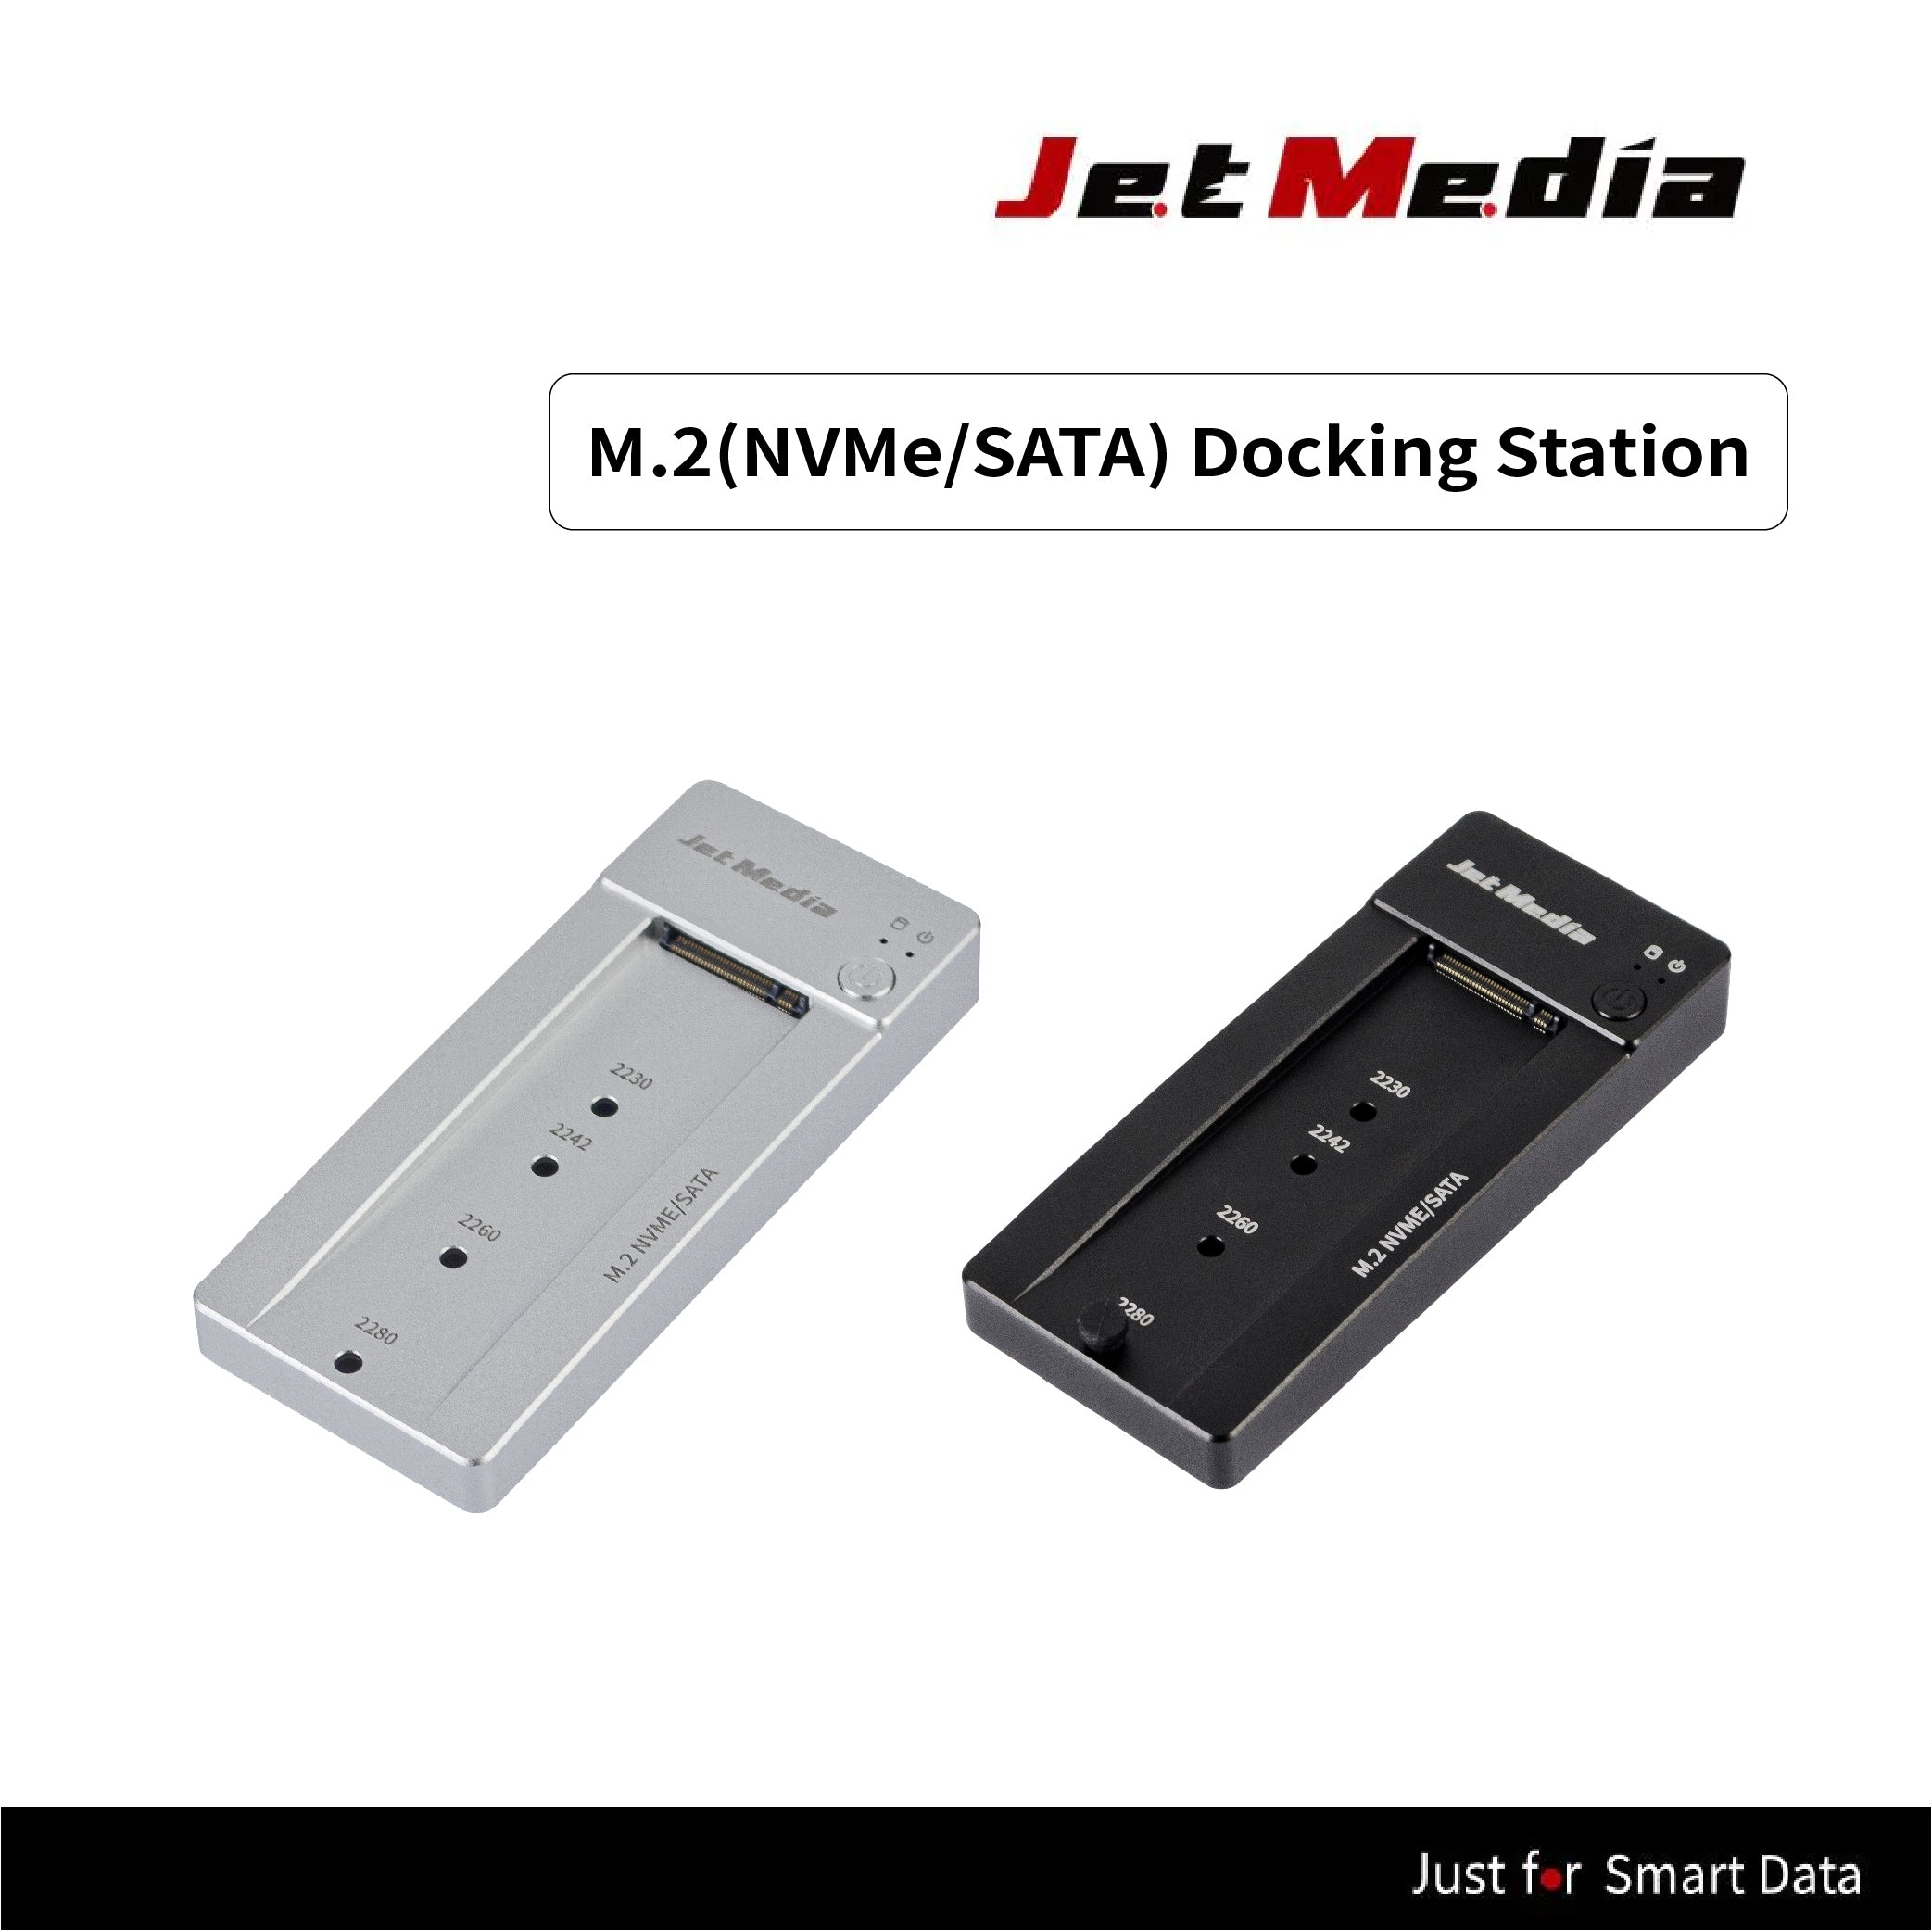 JetMedia JM-D1は、M.2 NVMe/SATAハードディスクドッキングステーションです。カラーはシルバーです